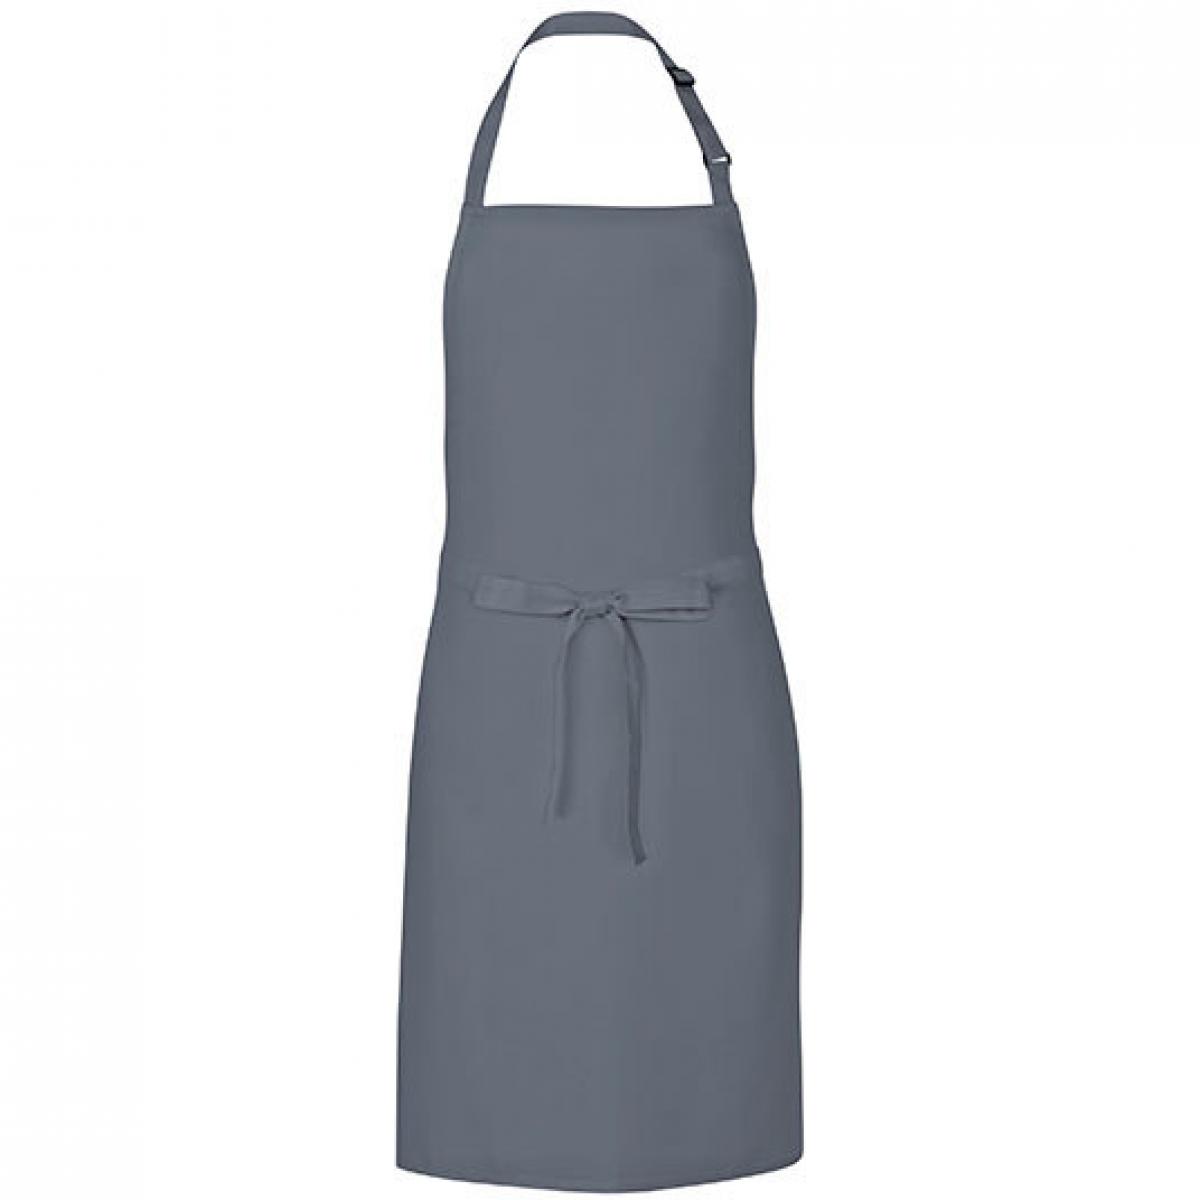 Hersteller: Link Kitchen Wear Herstellernummer: MS8572 Artikelbezeichnung: Multi Apron - 72 x 85 cm - Waschbar bis 60 °C Farbe: Dark Grey (ca. Pantone 431)